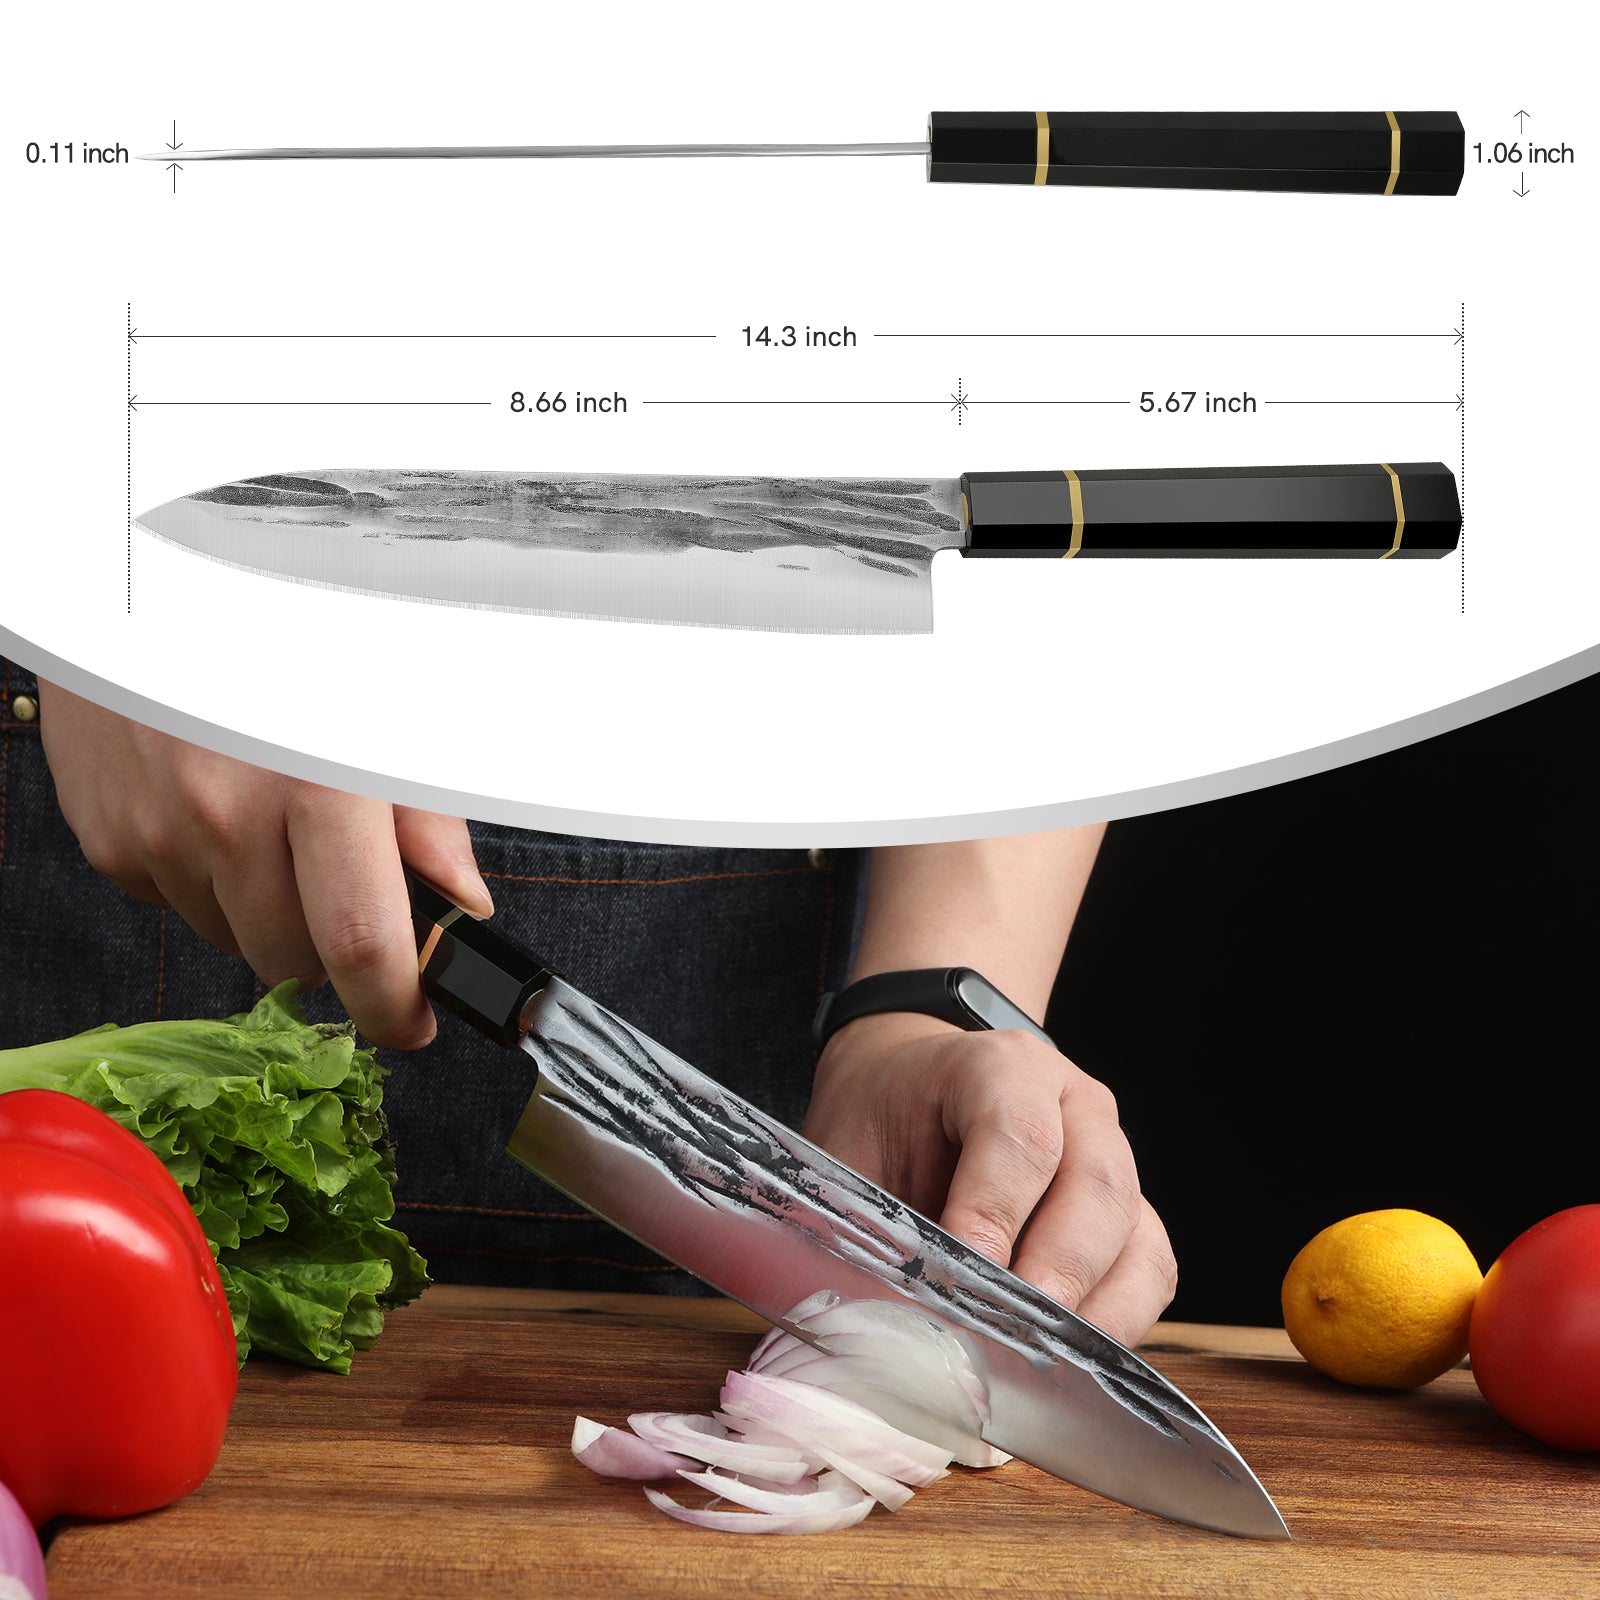 8.5'' Kitchen Sharp Chef Knife Sweden Sandvik 14c28n Steel Resin Handle Slicing Knives